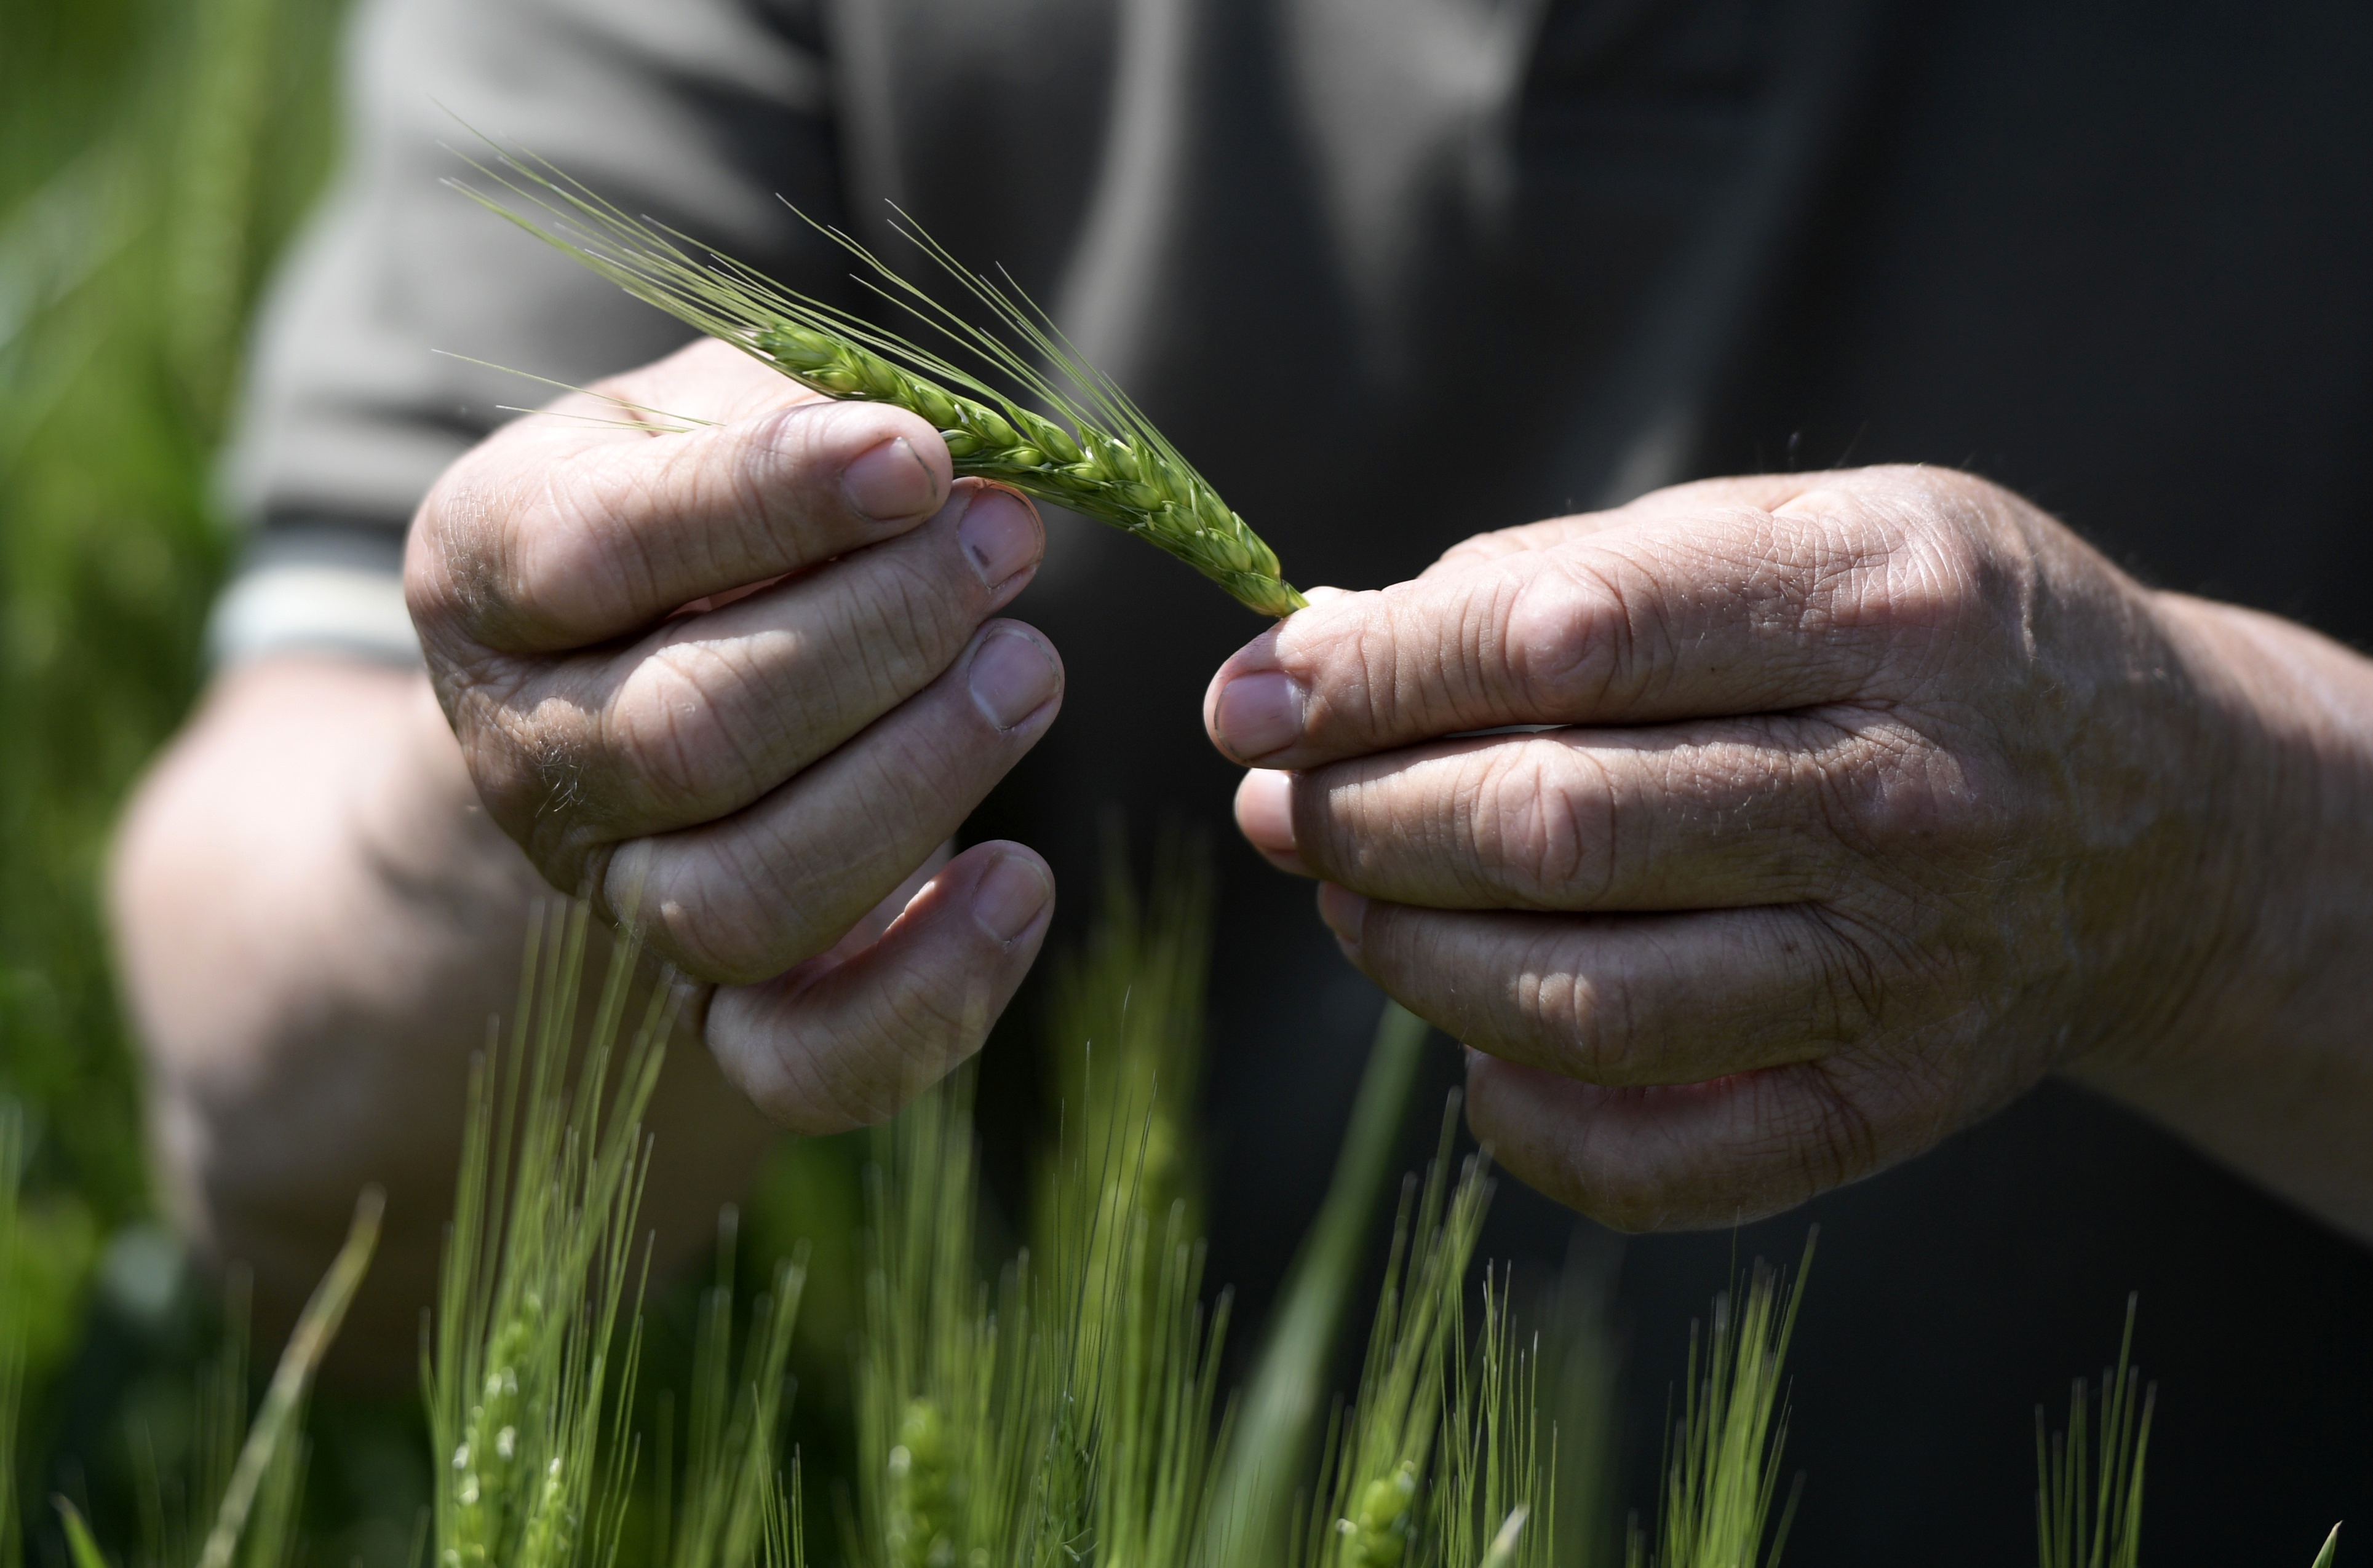 A wheat farmer inspects a green grain